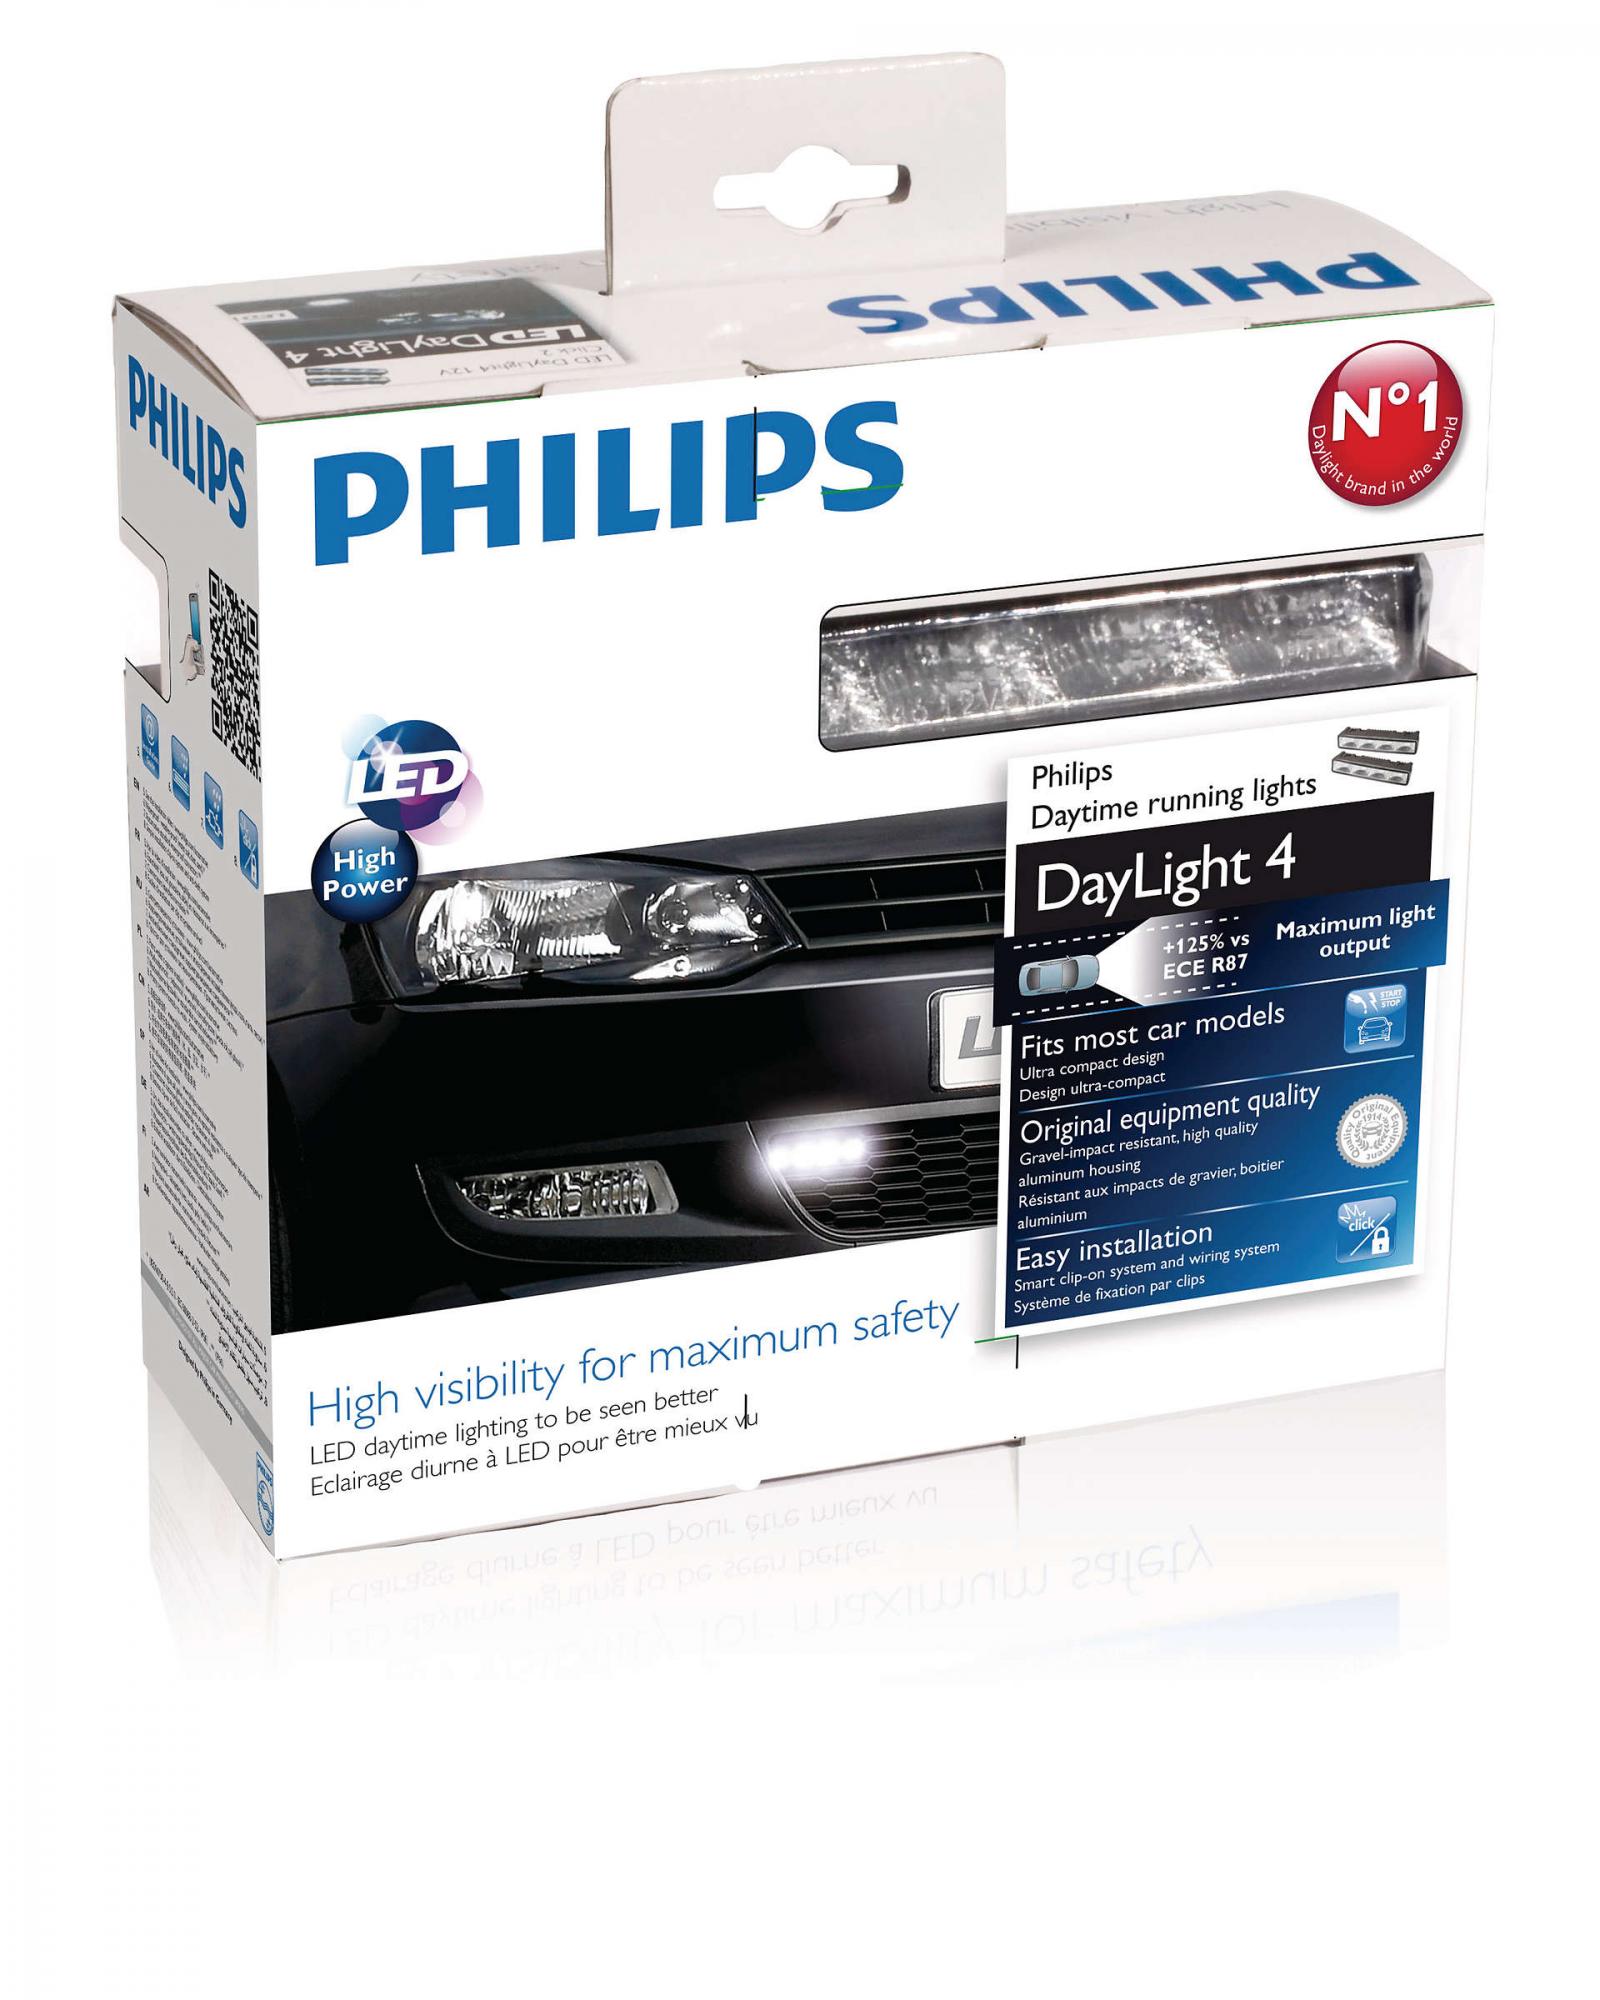 Дхо филипс. Ходовые огни Филипс Daylight 4. Philips led Daylight. Philips Daylight 4 12 v. Светодиодные ходовые огни Philips.